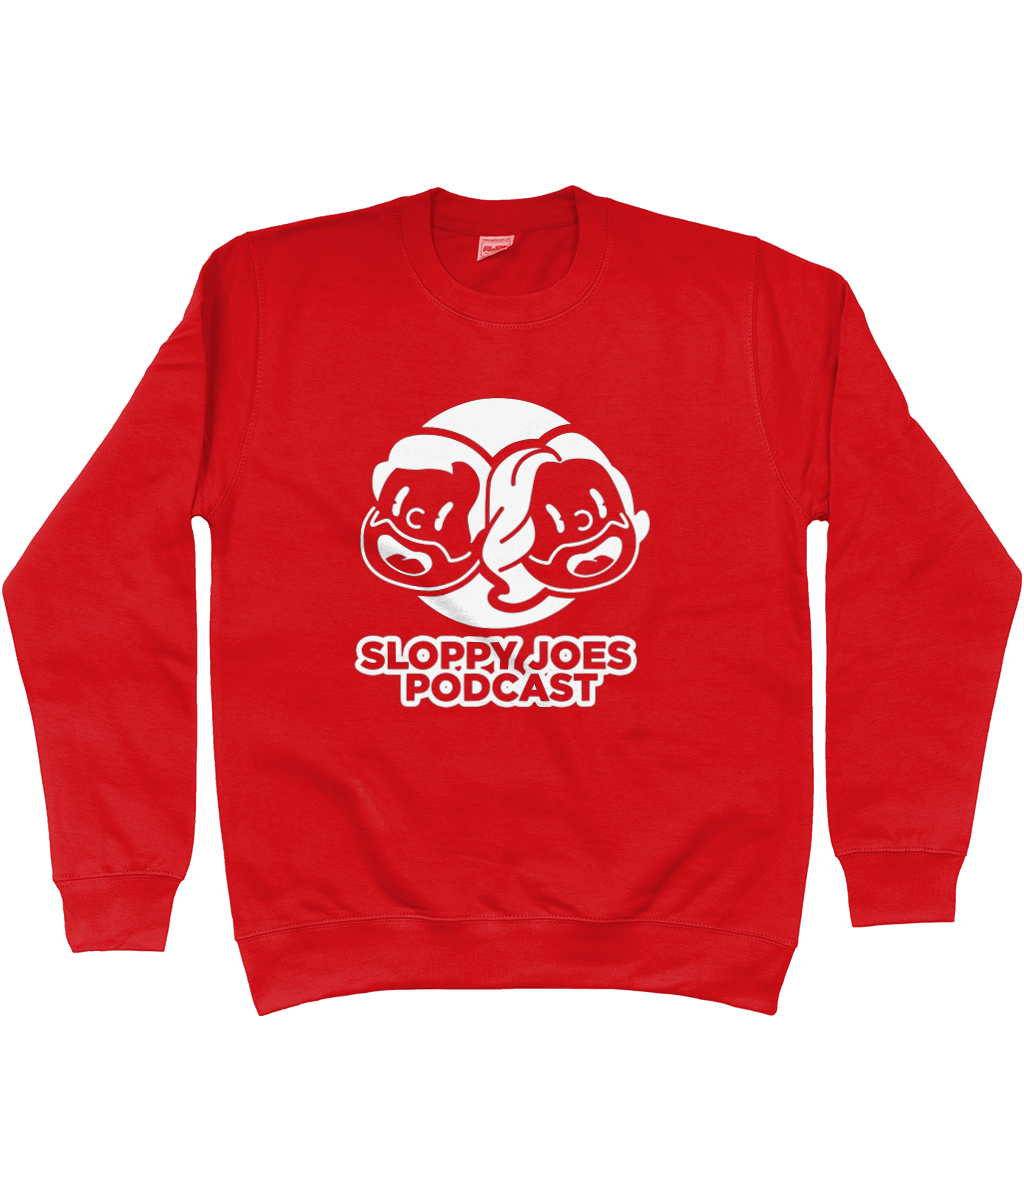 The Sloppy Joes Sweatshirt